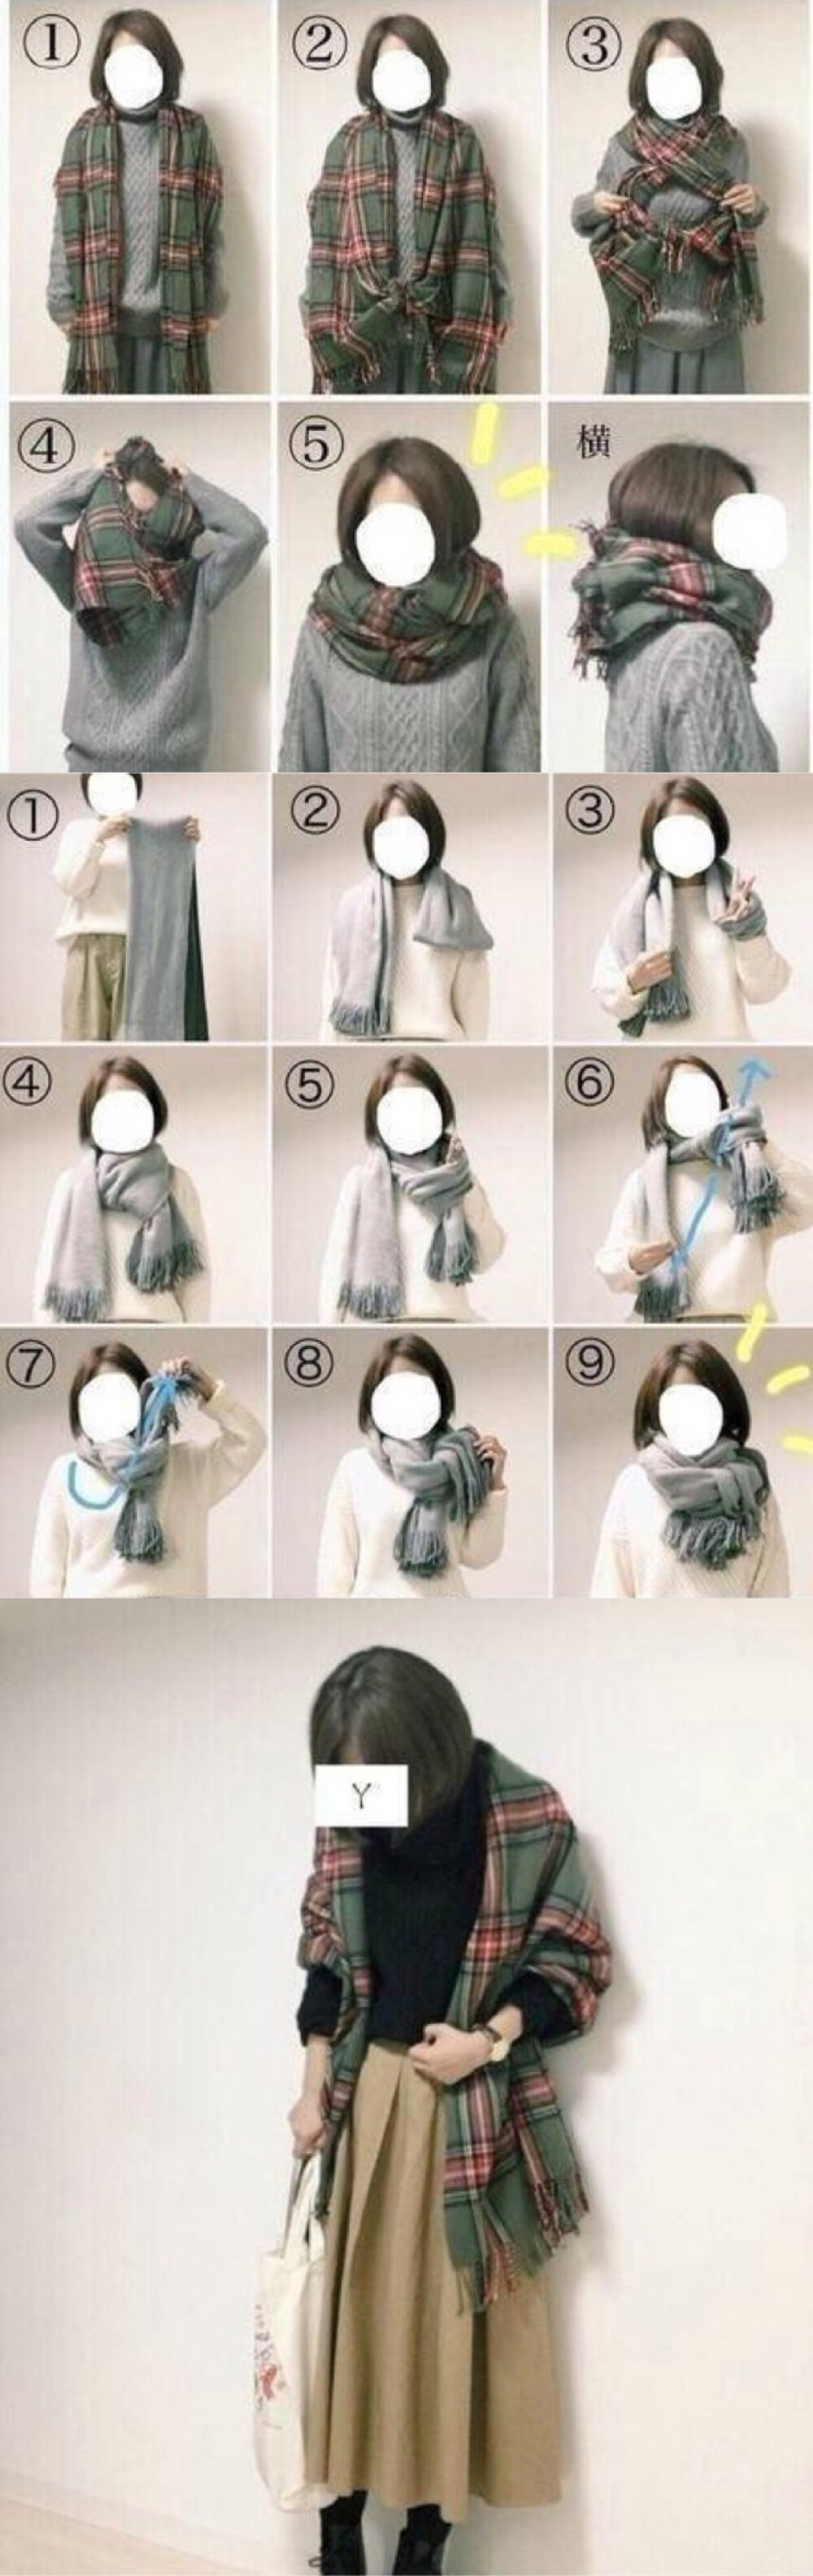 围巾披肩的各种穿法图片